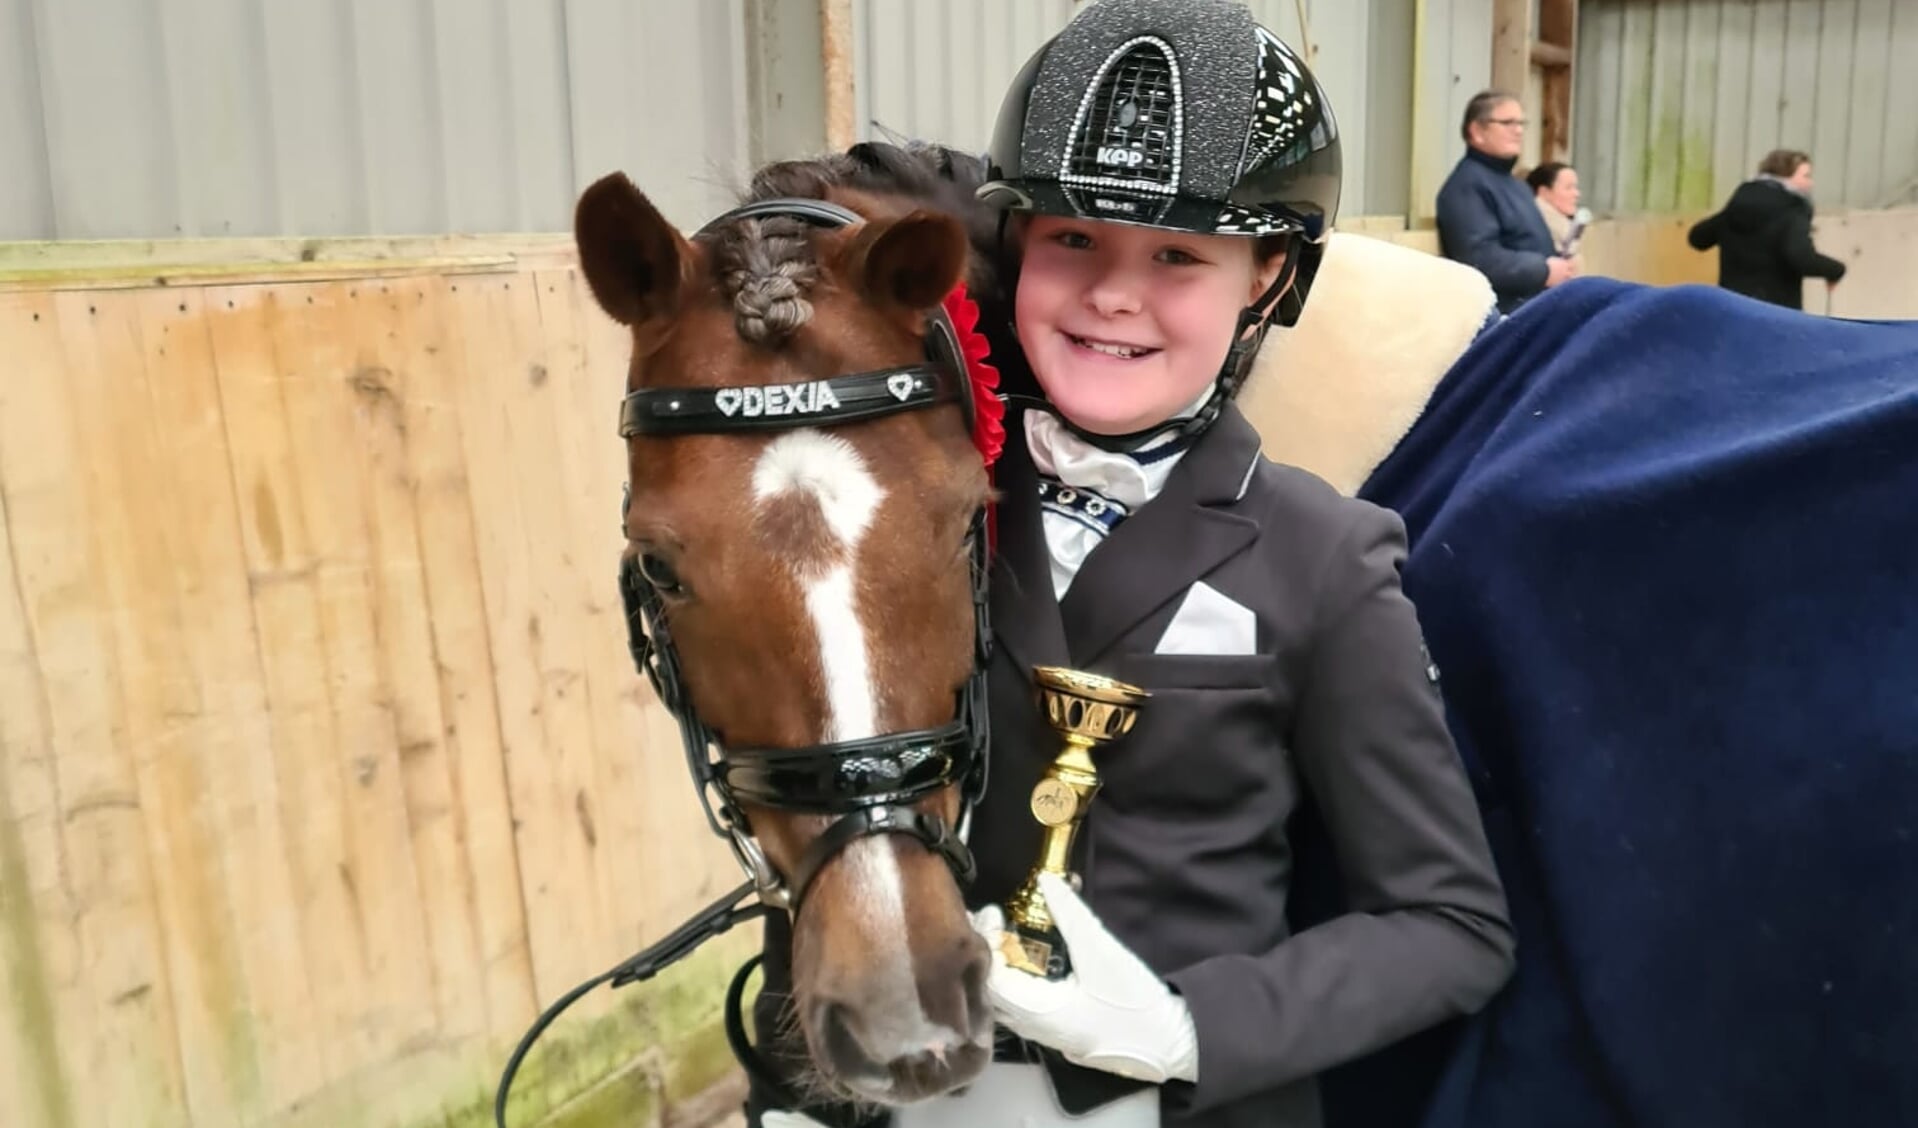 opbouwen Verlichten mengsel Tienjarige Jordan Luiten rijdt Z1 met zelf opgeleide Welsh pony Dexia: “Ze  heeft altijd doorgezet!” | Het onafhankelijke paarden(sport)medium